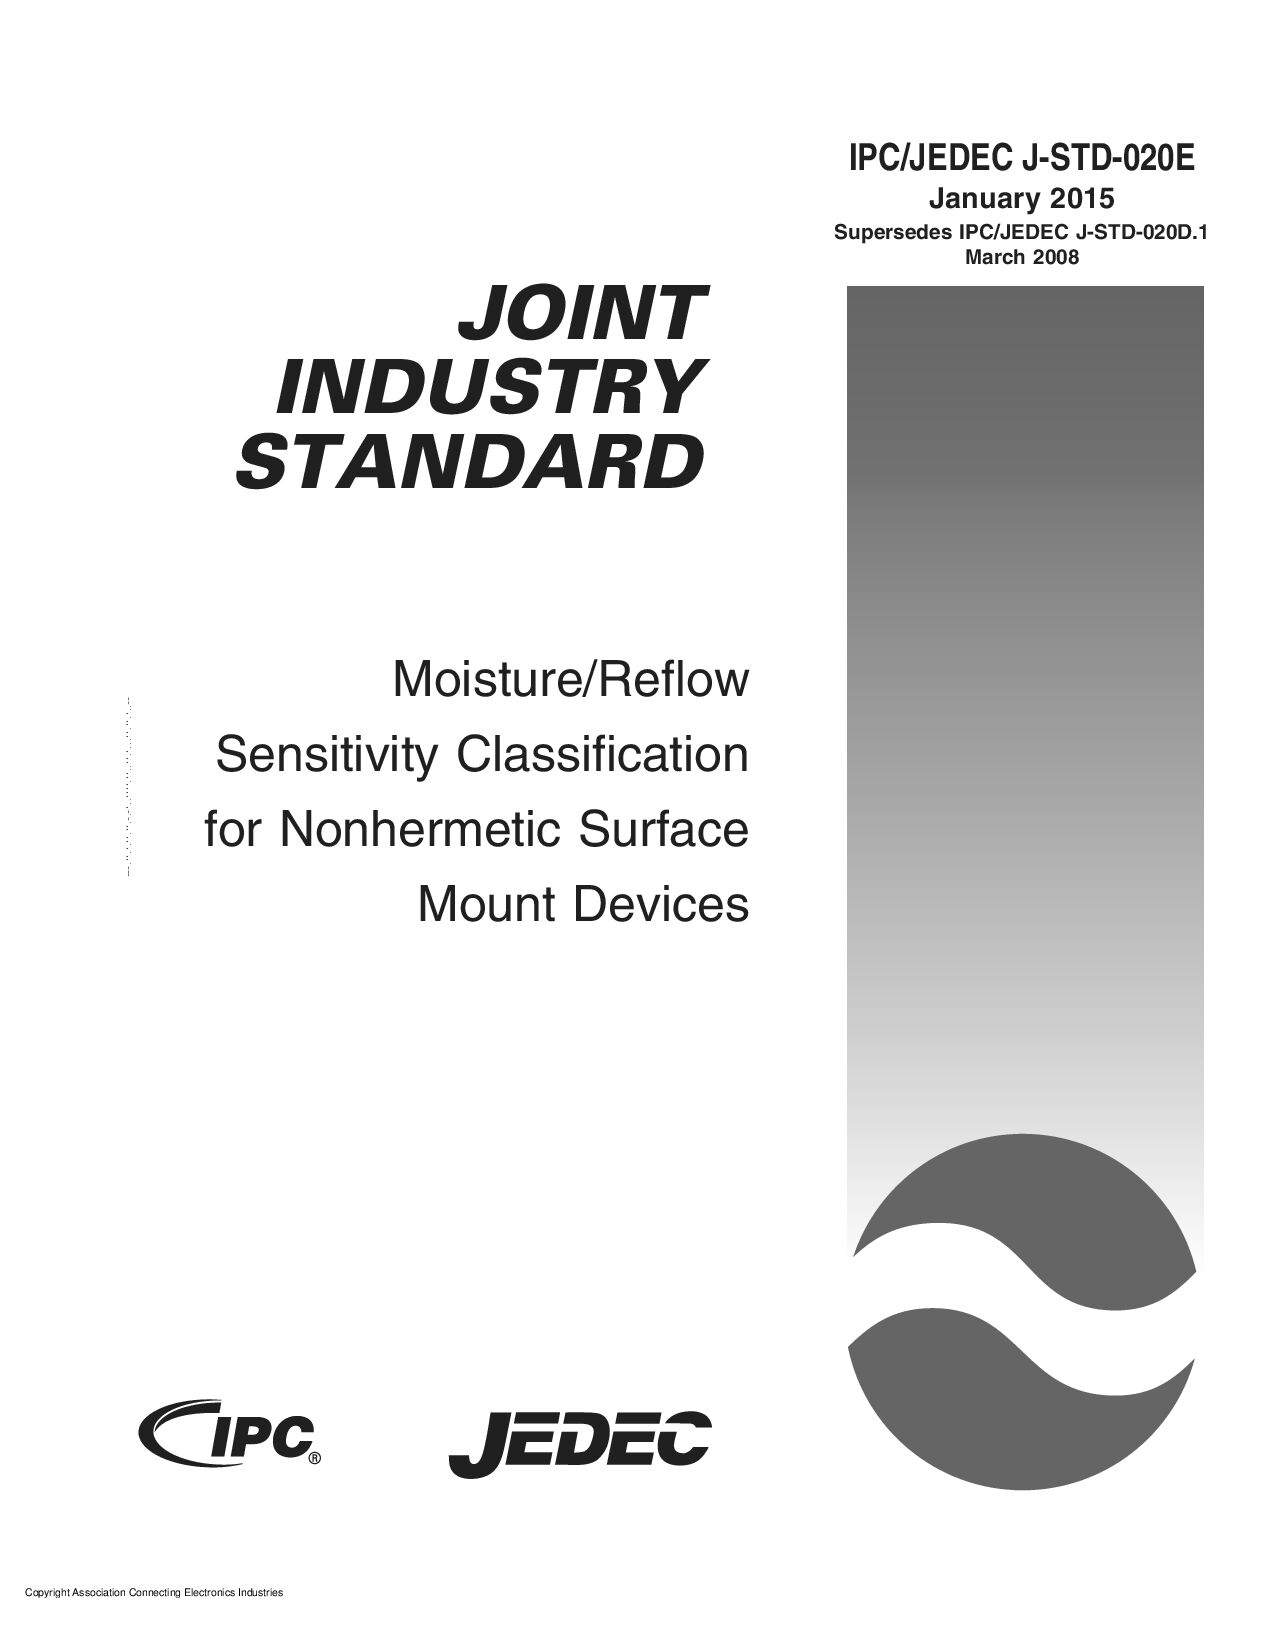 IPC JEDEC J-STD-020E封面图